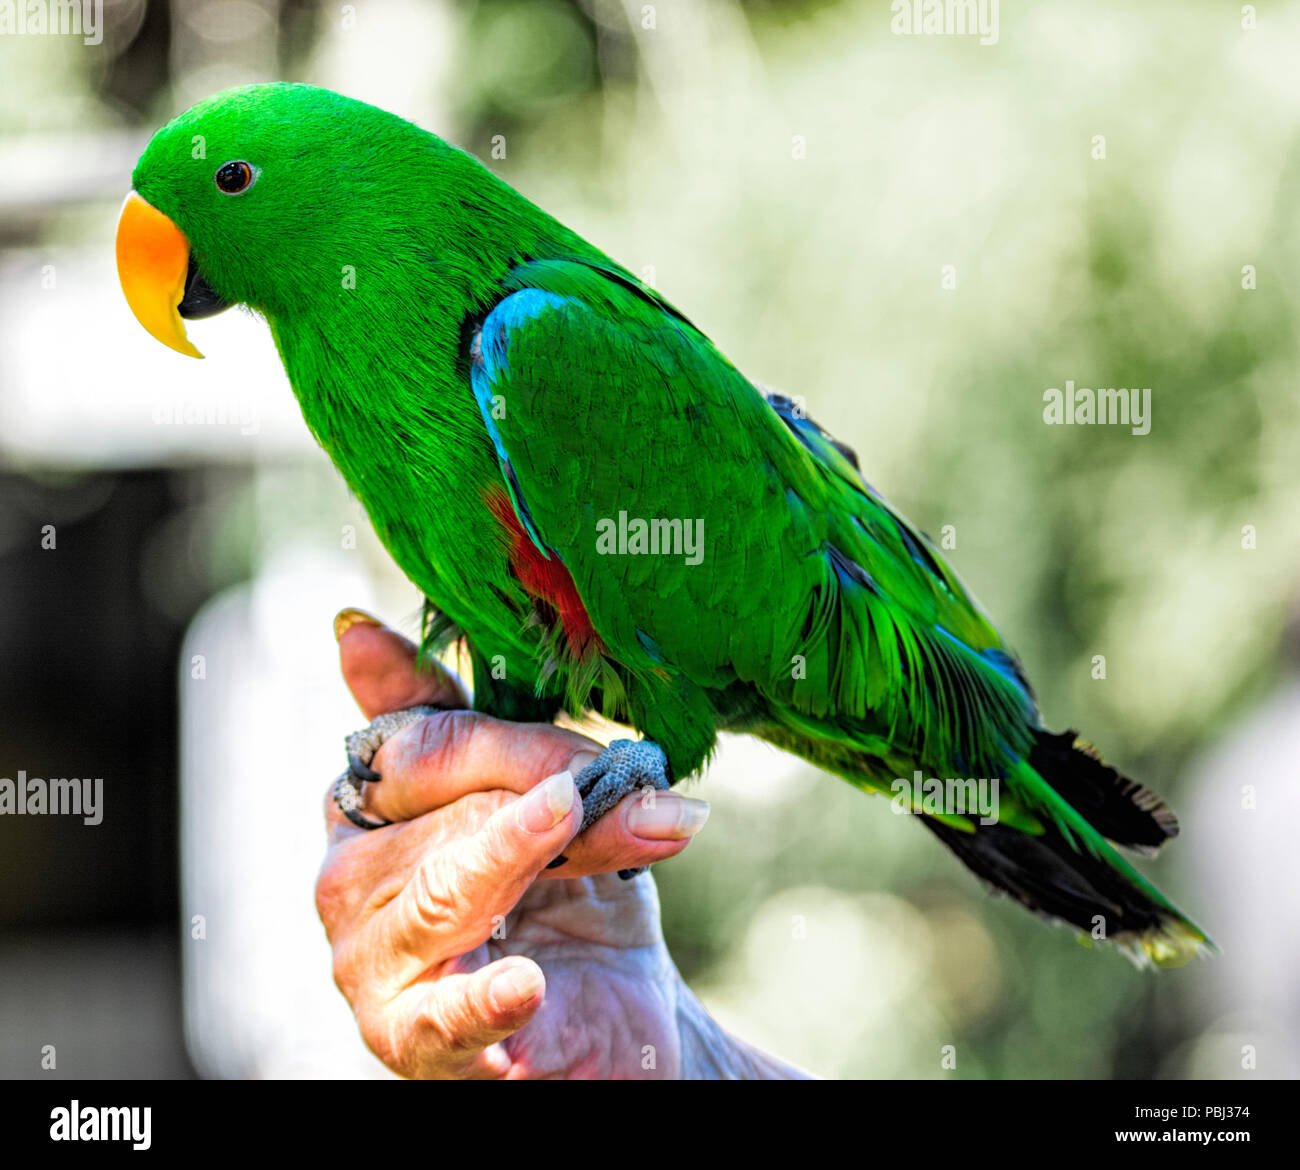 Un brillante y verde Loro Eclectus macho posado en la mano de su propietario Foto de stock